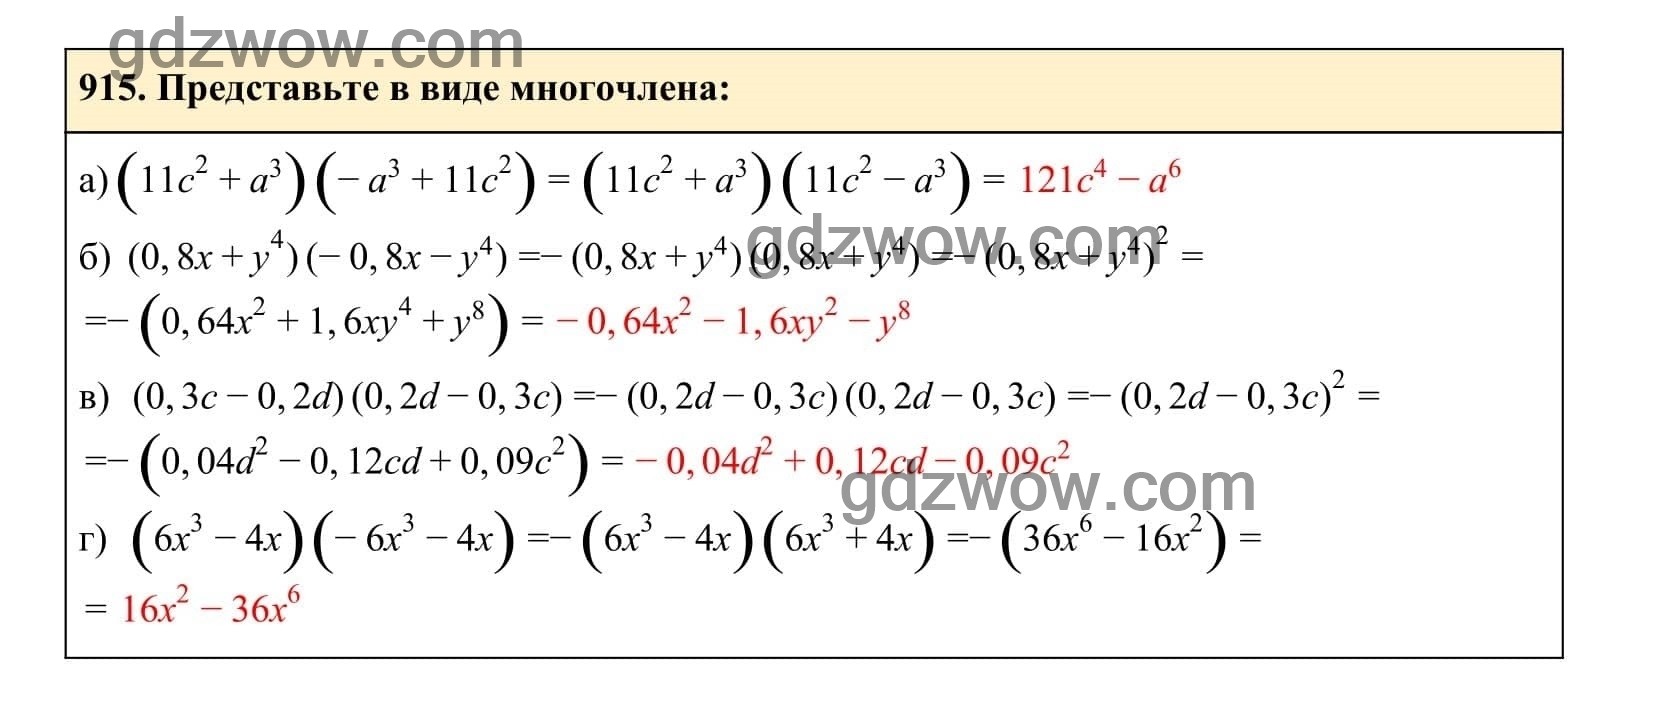 Упражнение 915 - ГДЗ по Алгебре 7 класс Учебник Макарычев (решебник) - GDZwow